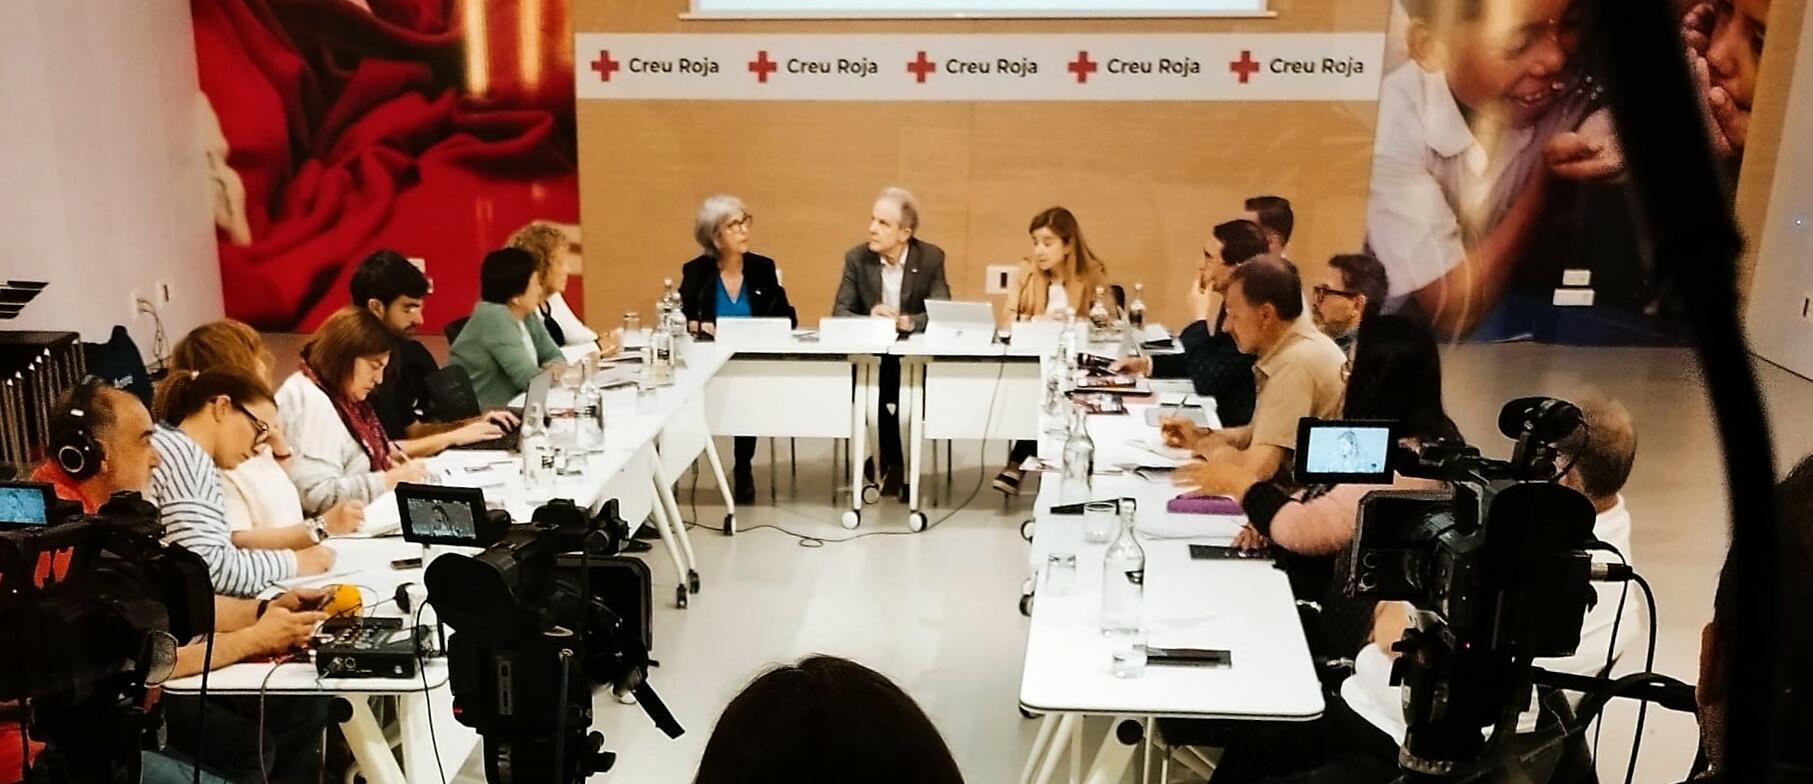 Creu Roja augmenta l’atenció de persones en situació d’extrema vulnerabilitat